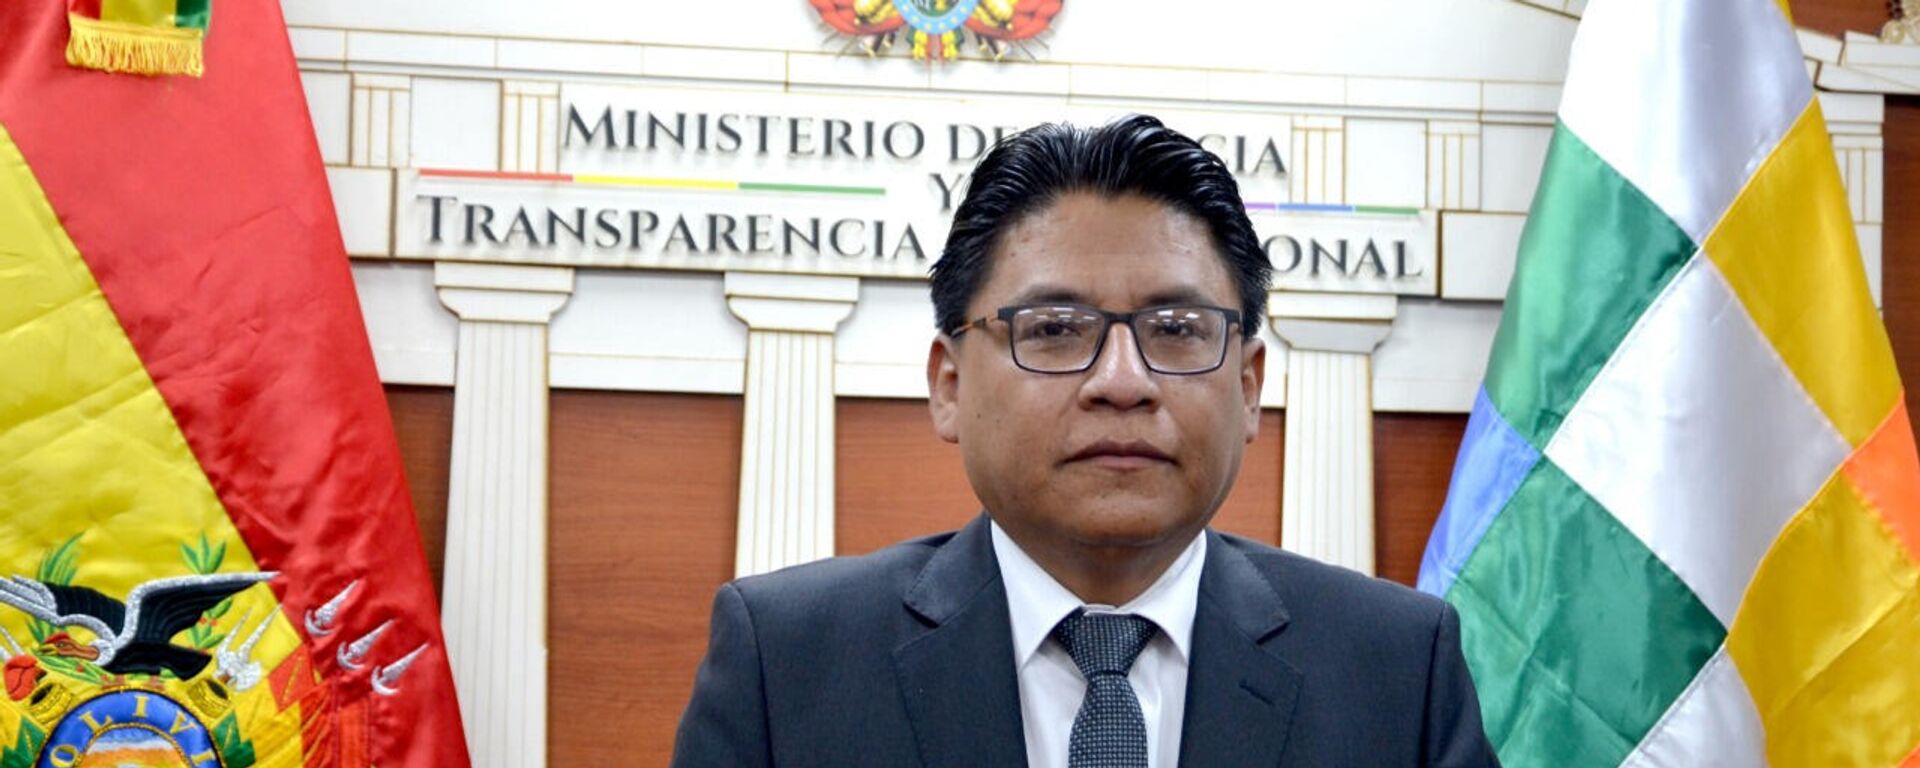   Iván Lima Magne, ministro de Justicia de Bolivia - Sputnik Mundo, 1920, 11.01.2022